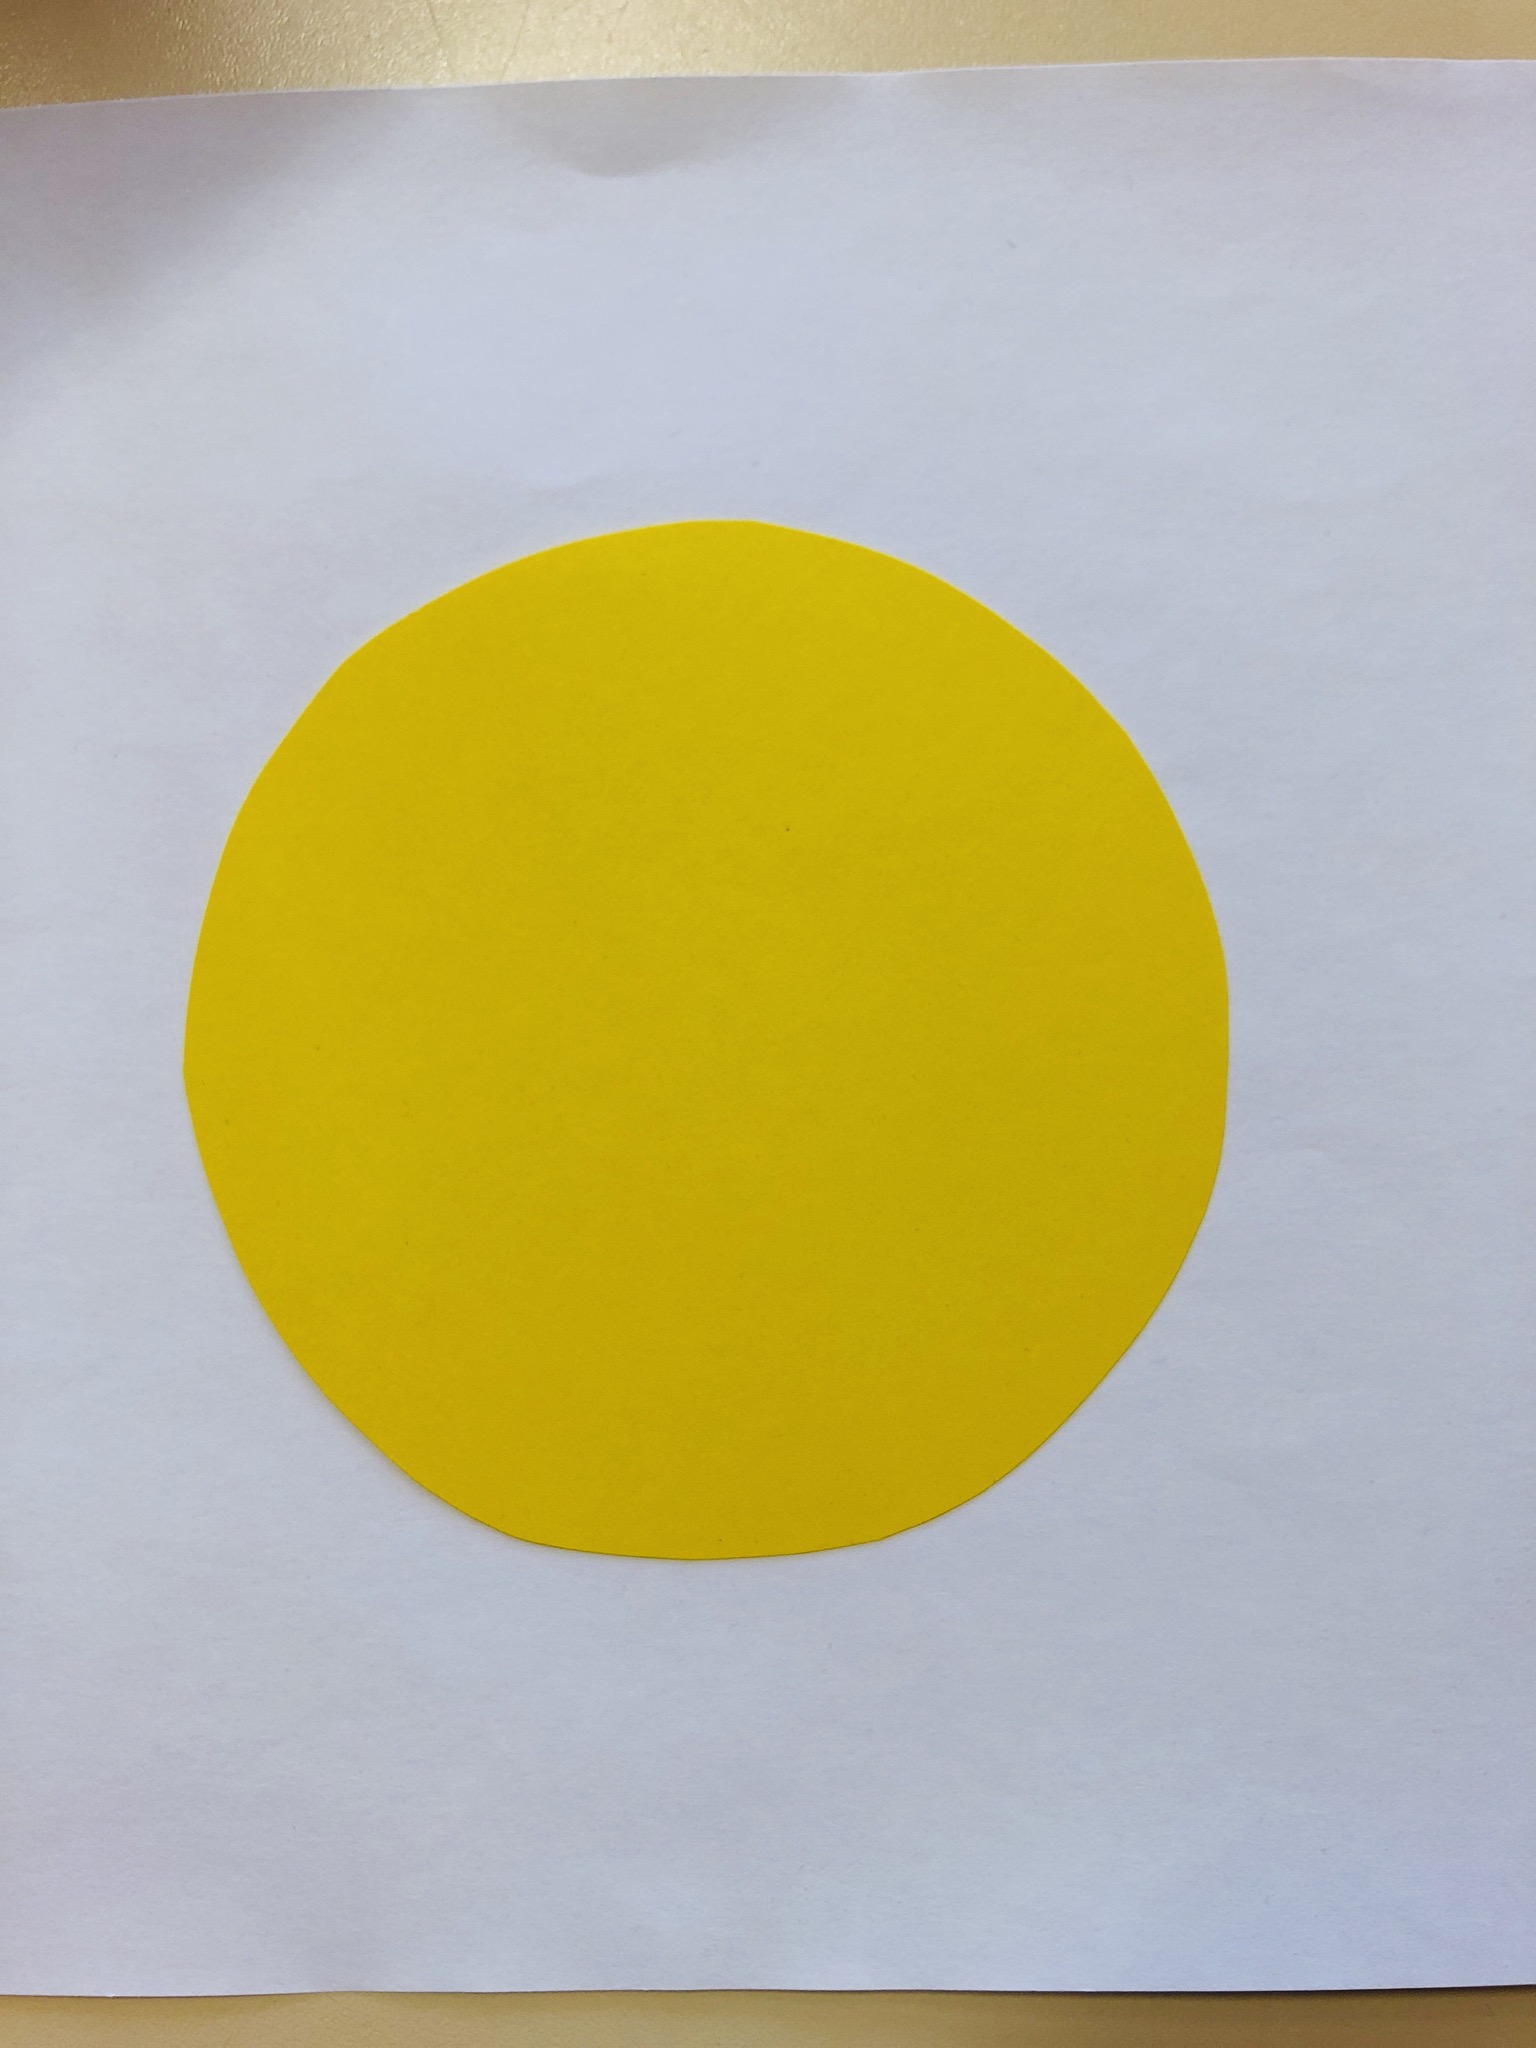 Bild zum Schritt 1 für das Bastel- und DIY-Abenteuer für Kinder: 'Zeichne einen Kreis mit ca. 8 cm Durchmesser auf gelbes...'